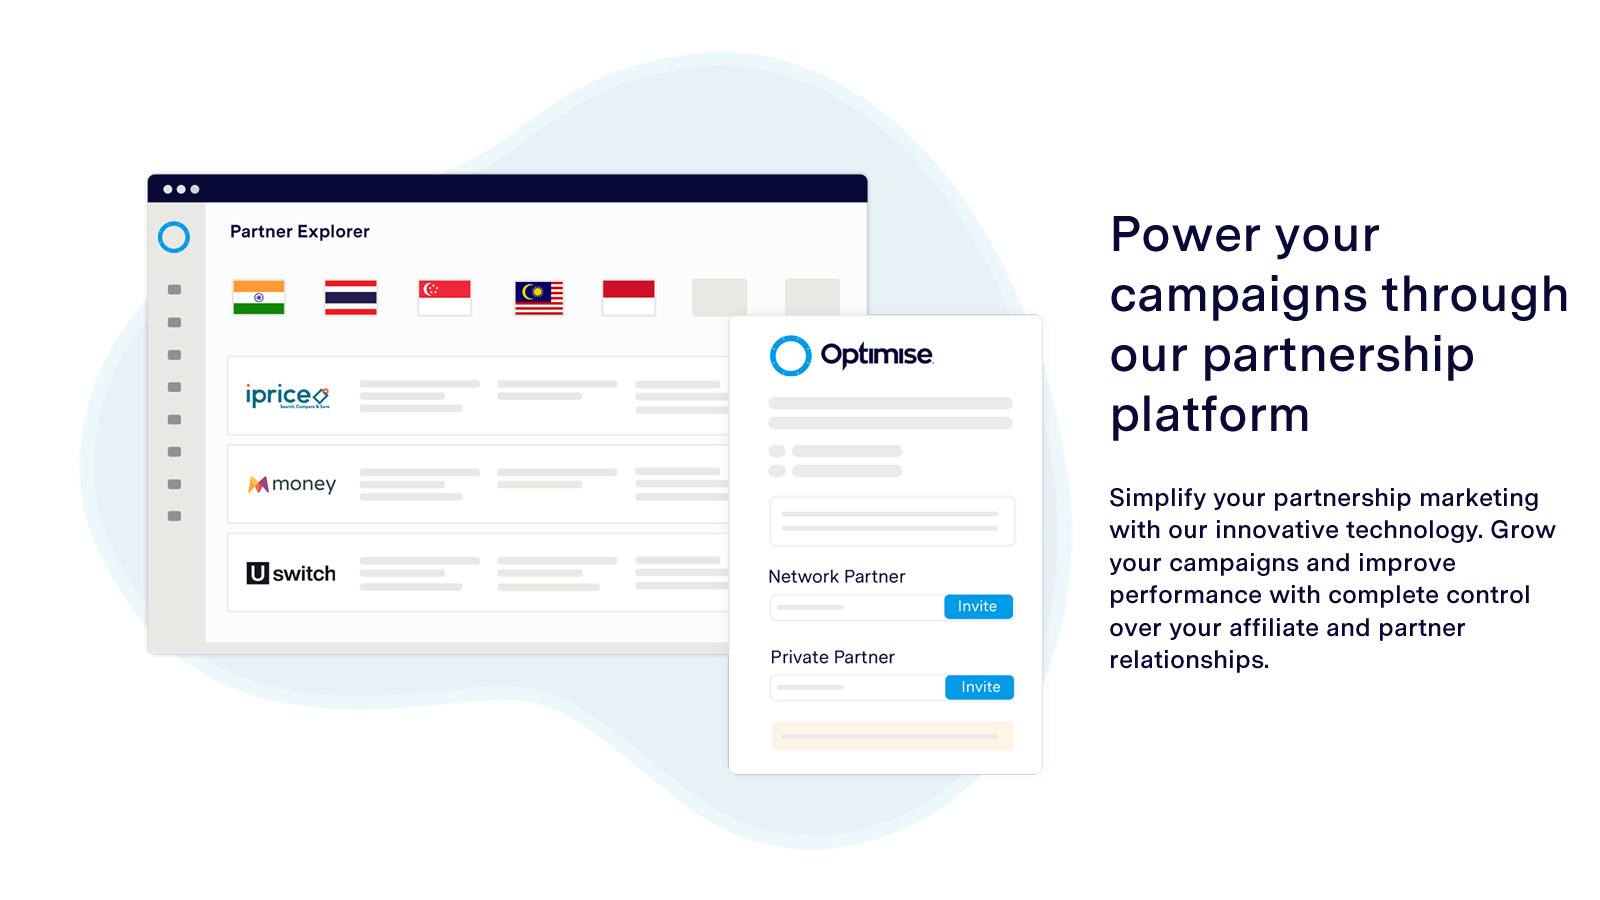 Stuw uw campagnes via ons partnerschap platform